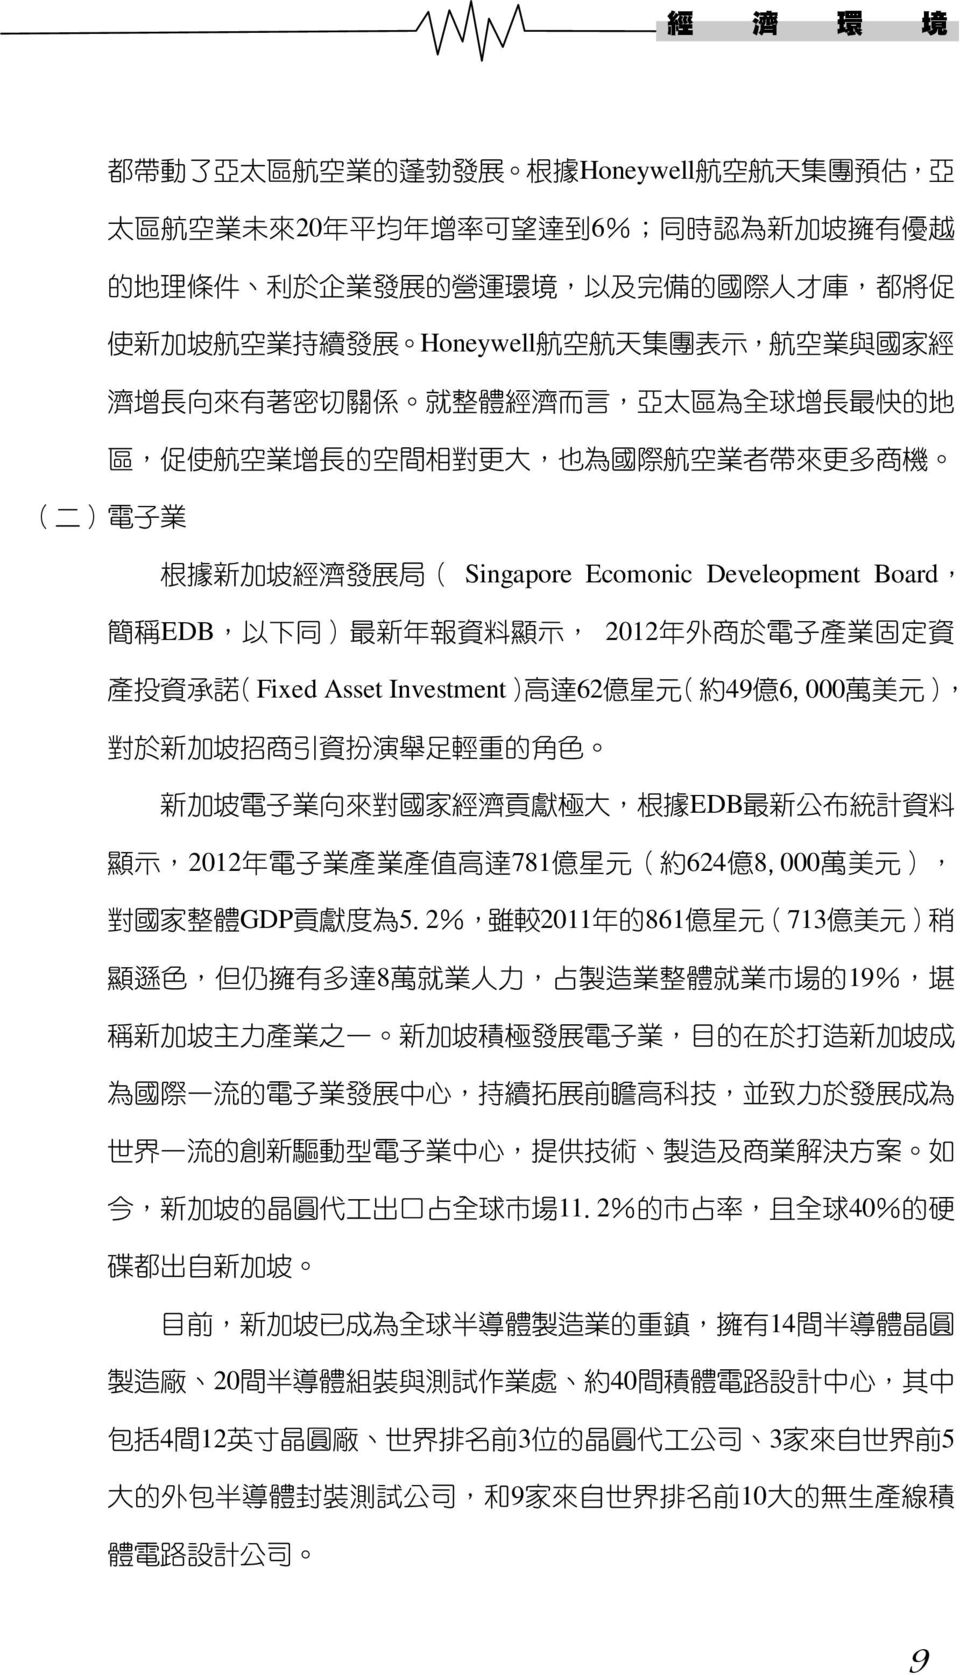 經 濟 發 展 局 ( Singapore Ecomonic Develeopment Board, 簡 稱 EDB, 以 下 同 ) 最 新 年 報 資 料 顯 示, 2012 年 外 商 於 電 子 產 業 固 定 資 產 投 資 承 諾 (Fixed Asset Investment) 高 達 62 億 星 元 ( 約 49 億 6,000 萬 美 元 ), 對 於 新 加 坡 招 商 引